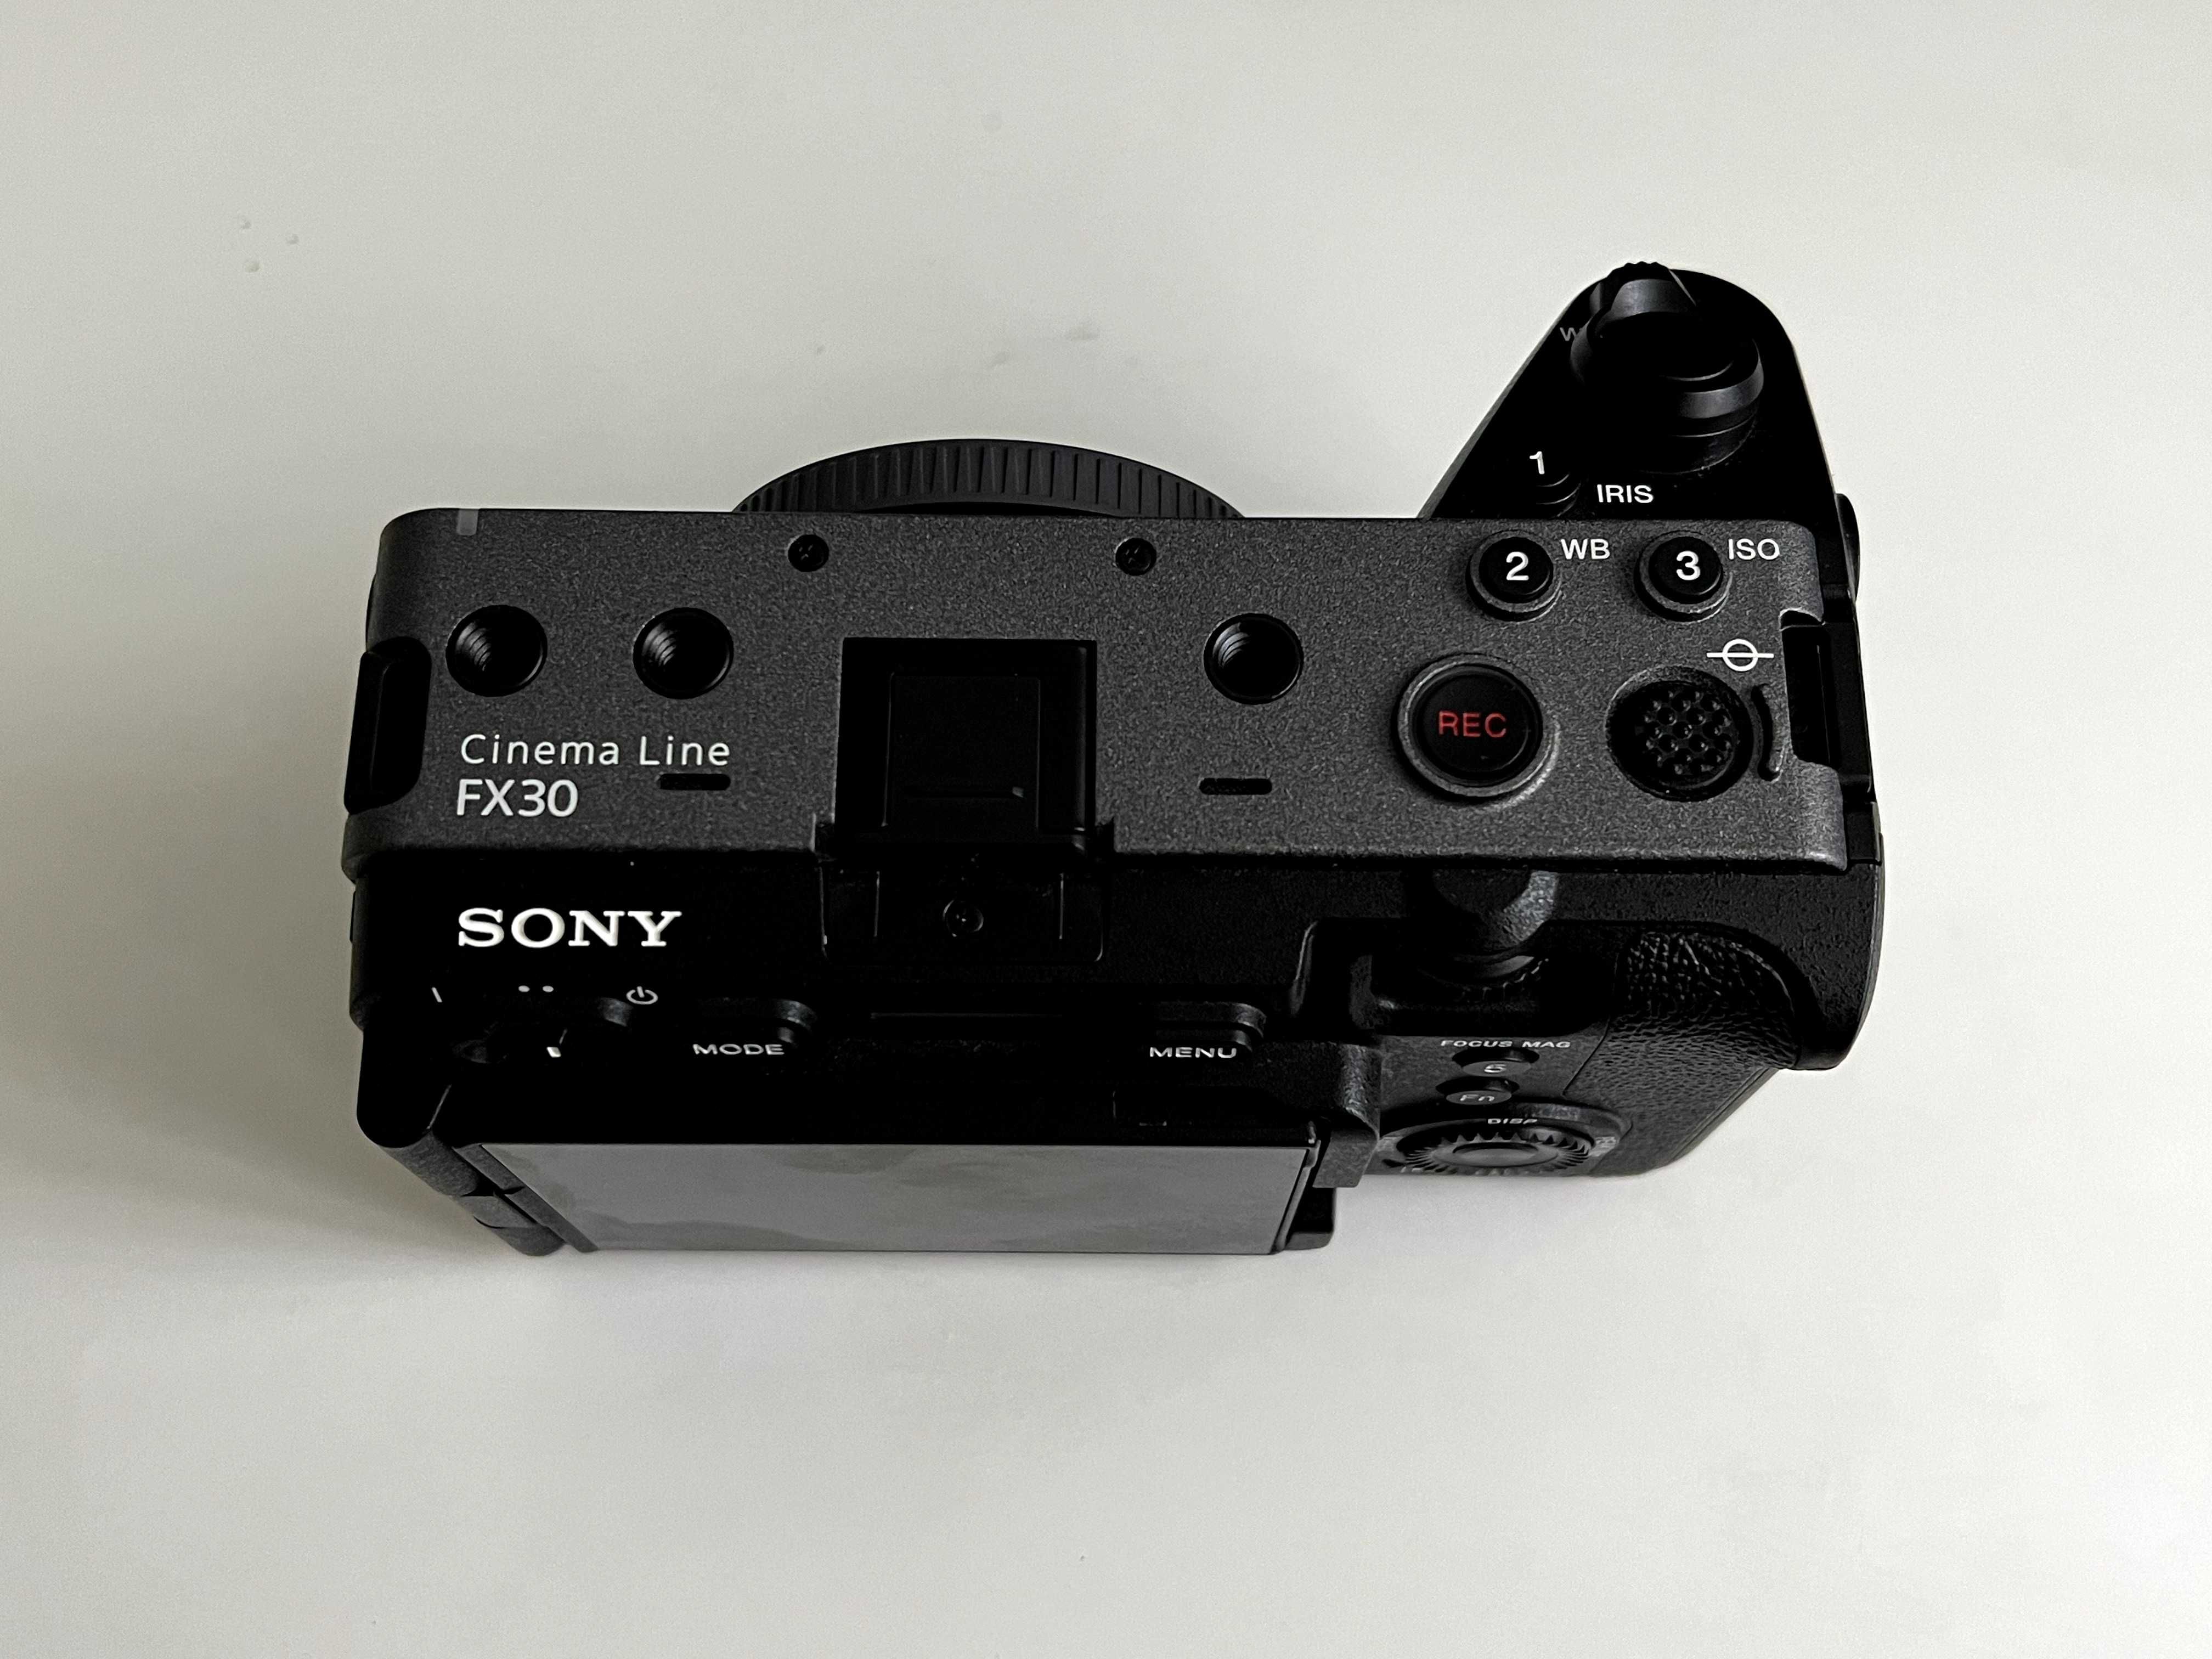 Sony FX-30 Cinema Line (Body)